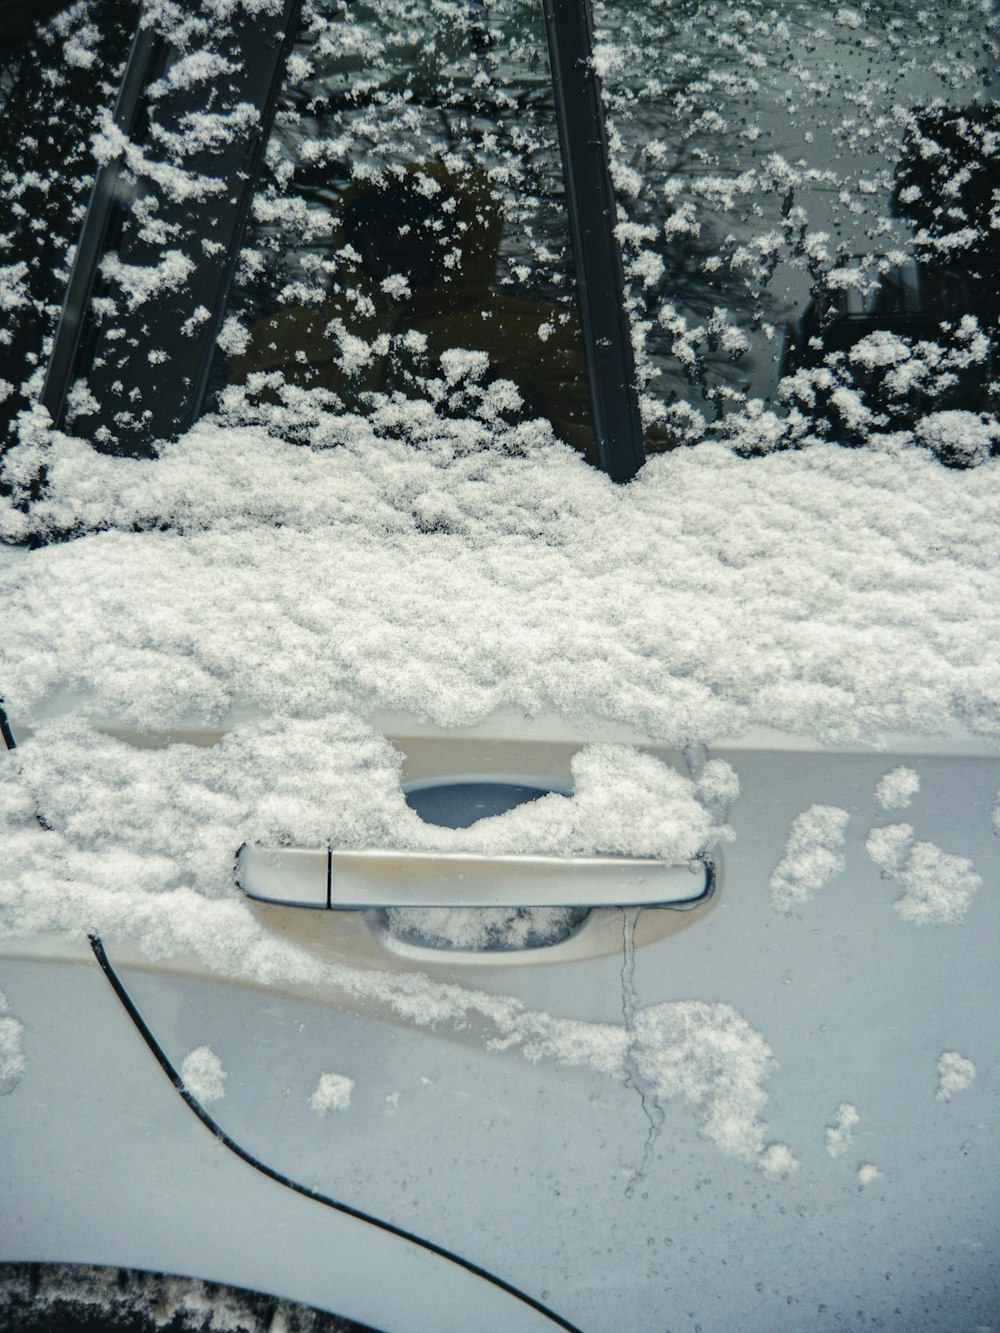 une voiture recouverte de neige avec une poignée de porte